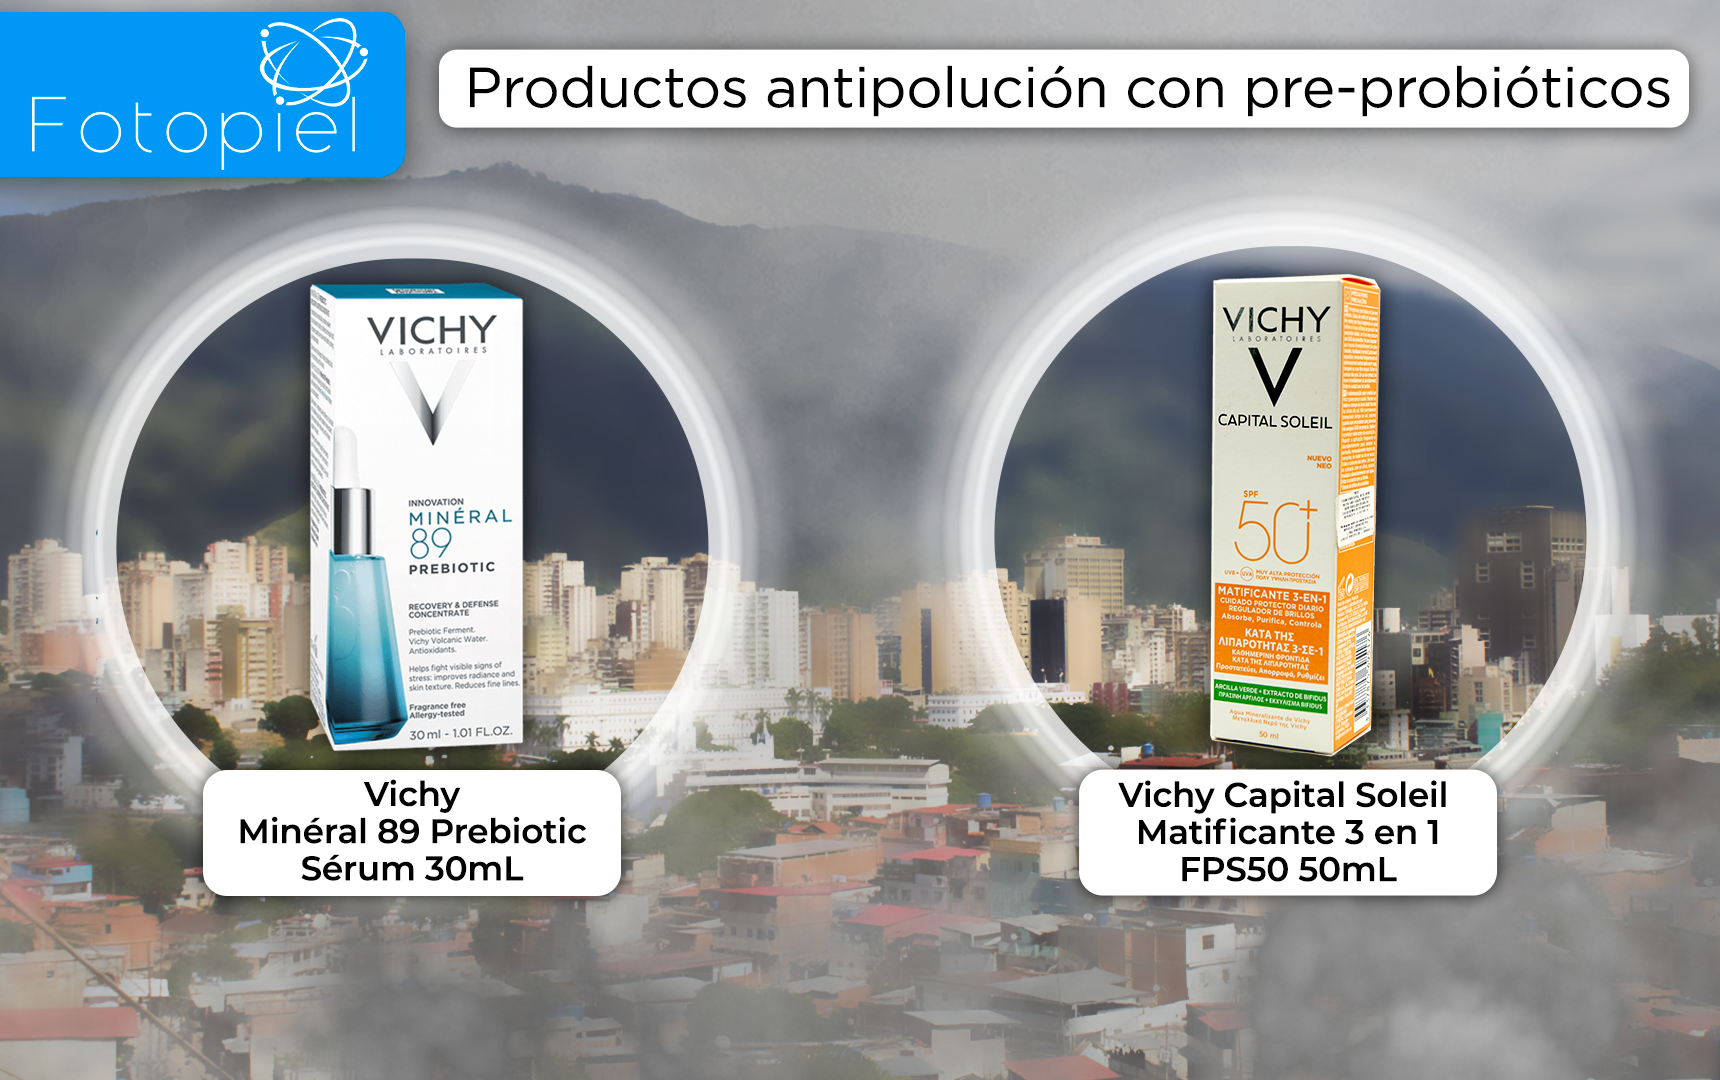 Productos antipolución con pre-bioticos - Vichy minéral 89 probiotic y Vichy capital soleil matificante 3 en 1.